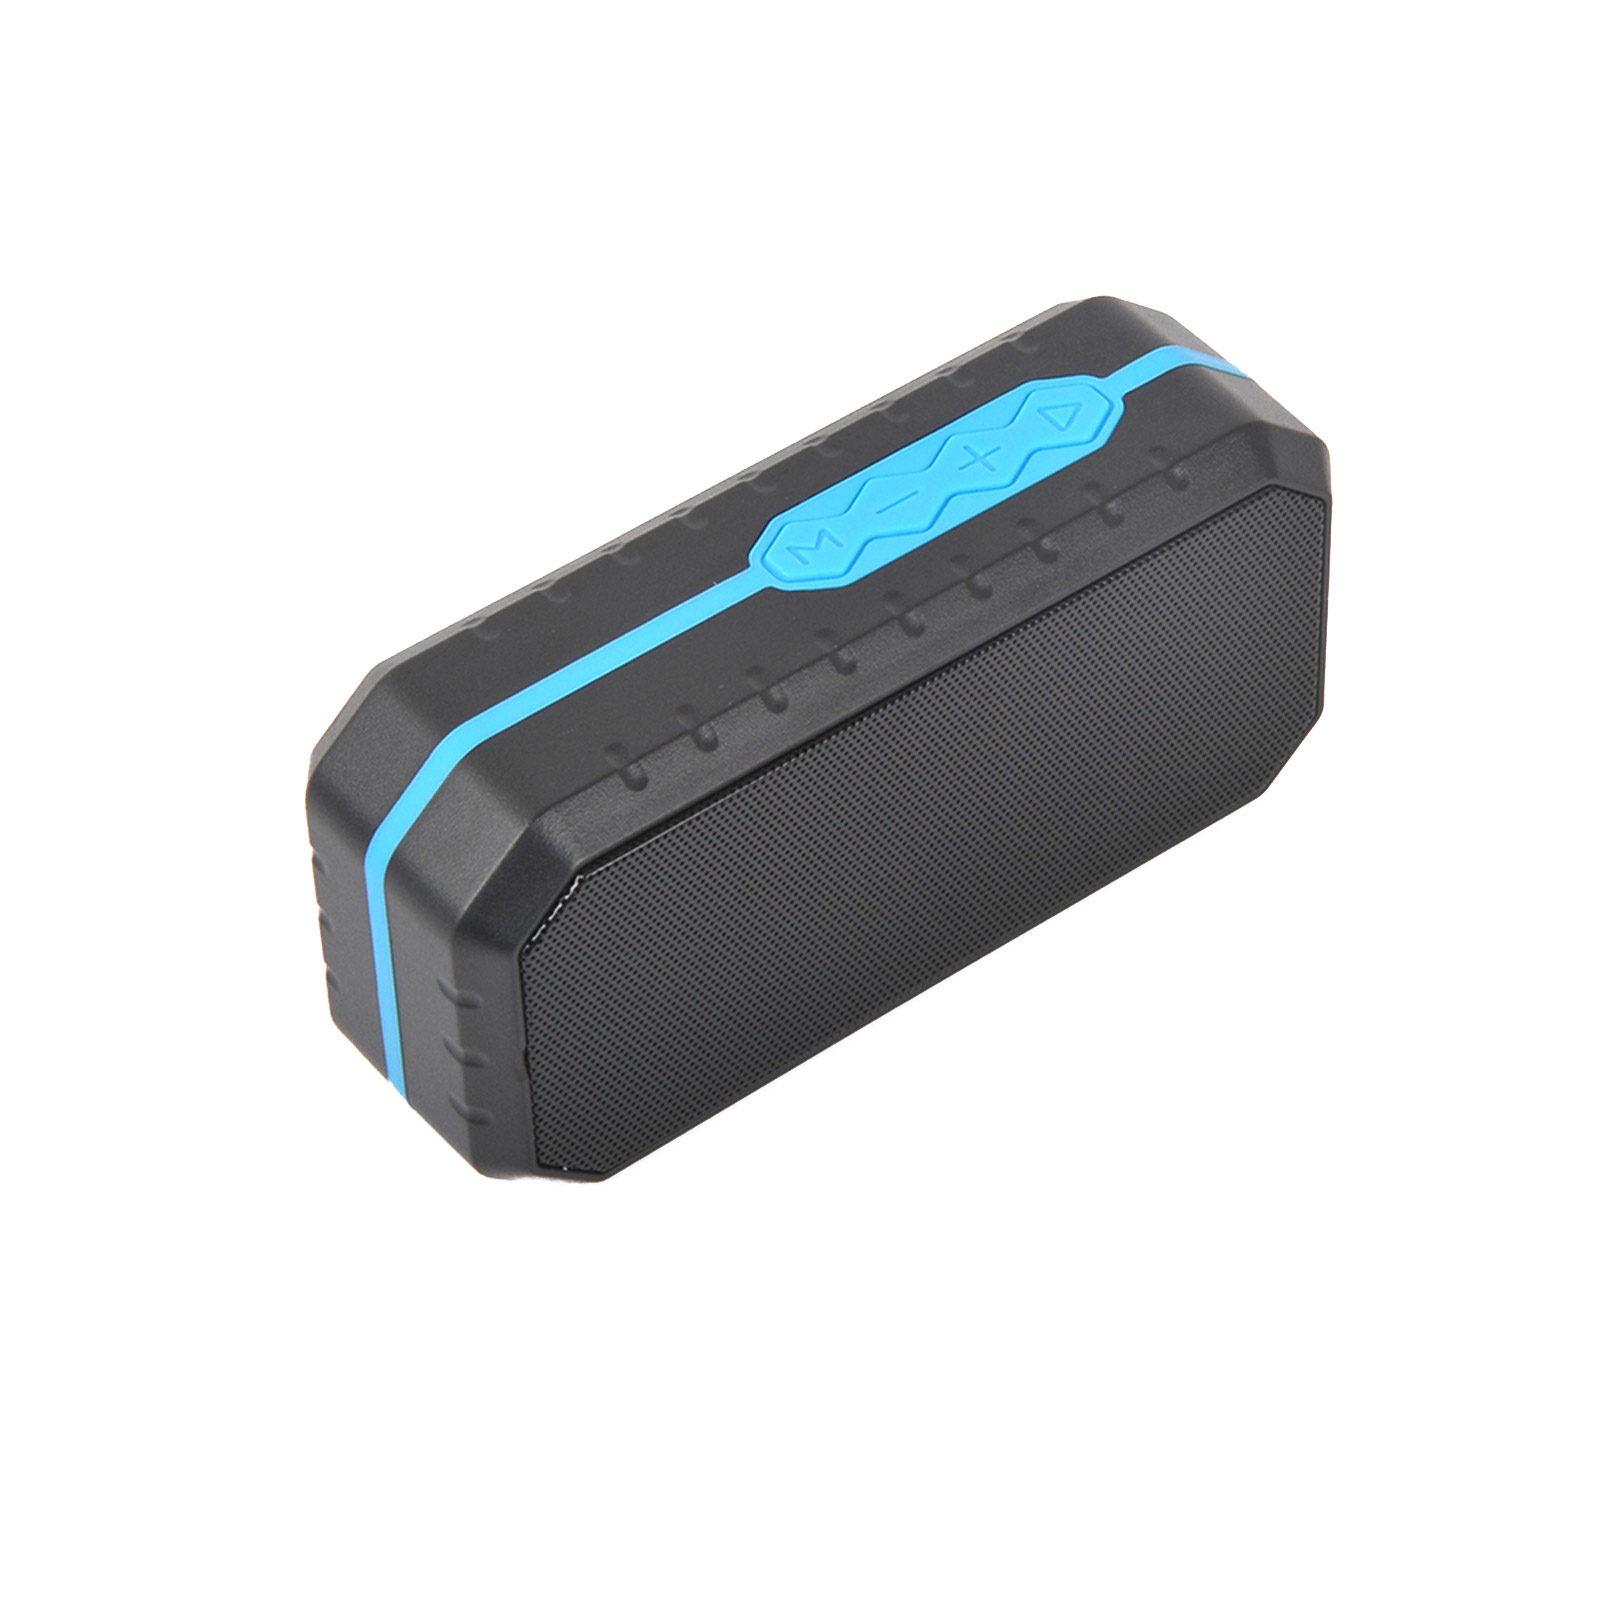 Портативная водонепроницаемая аудио Bluetooth колонка Raiskid F3-D, AUX, USB, TFT, цвет черно-синий